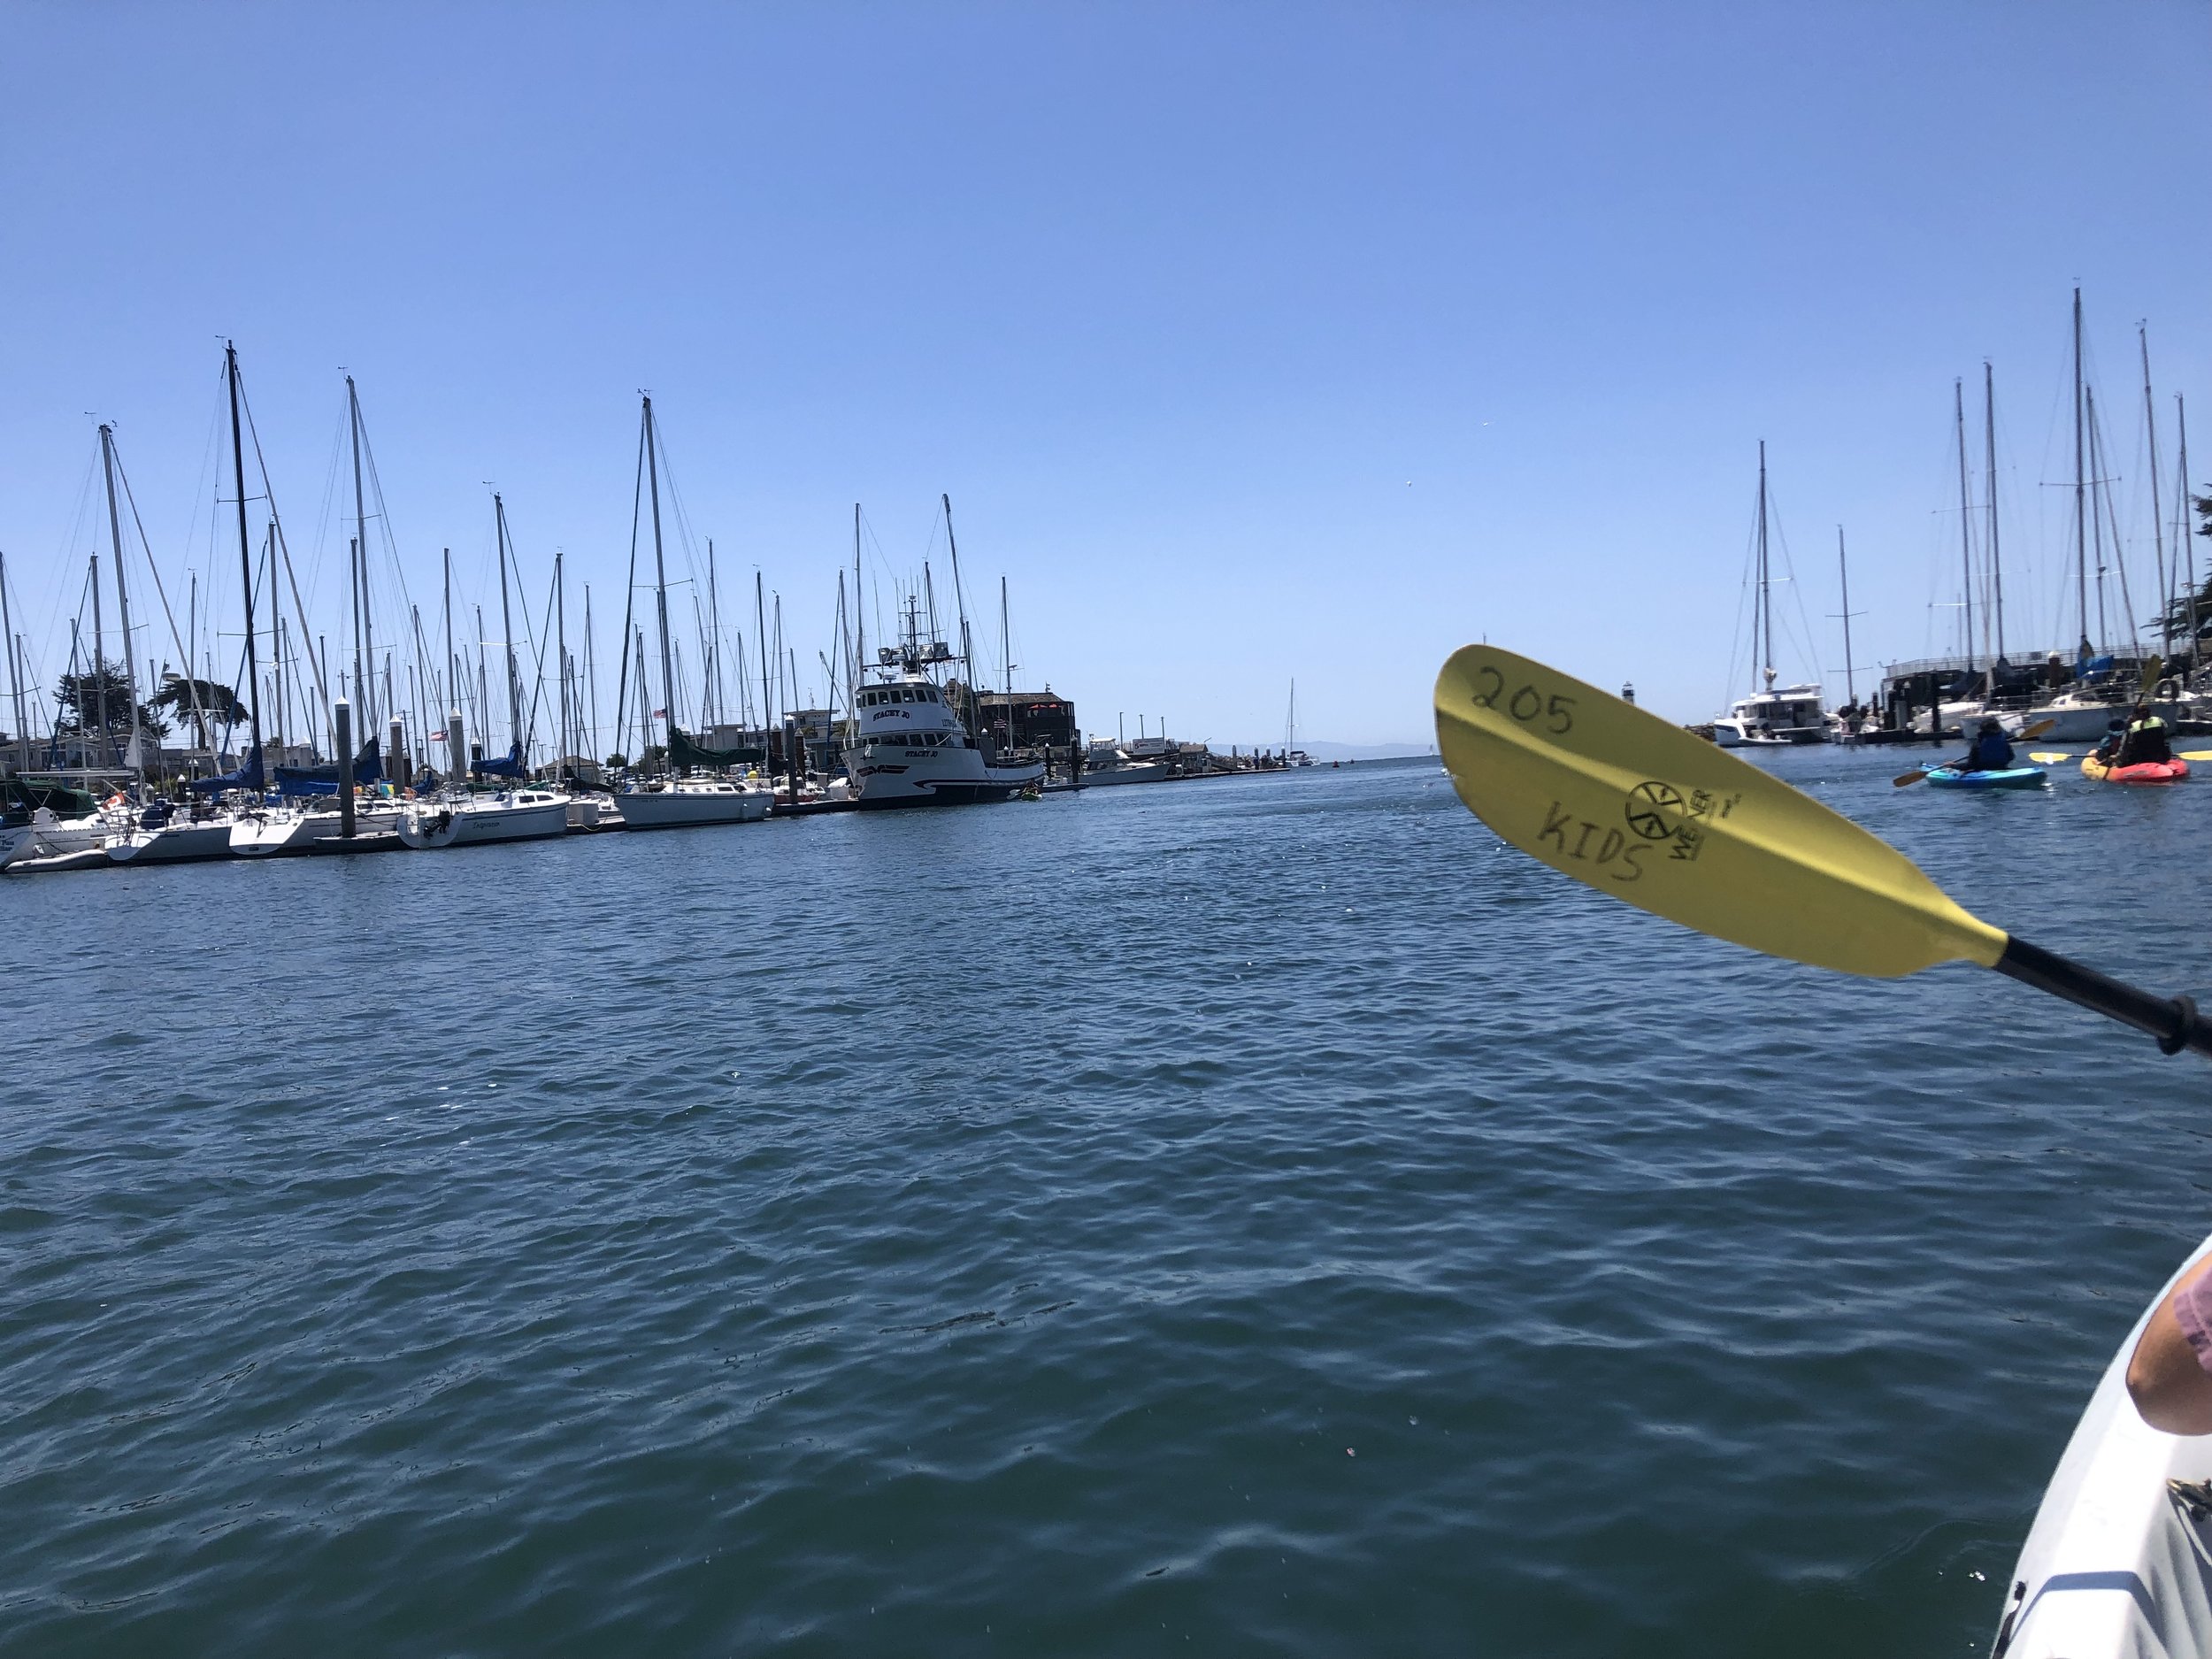 Kayaking in Santa Cruz harbor